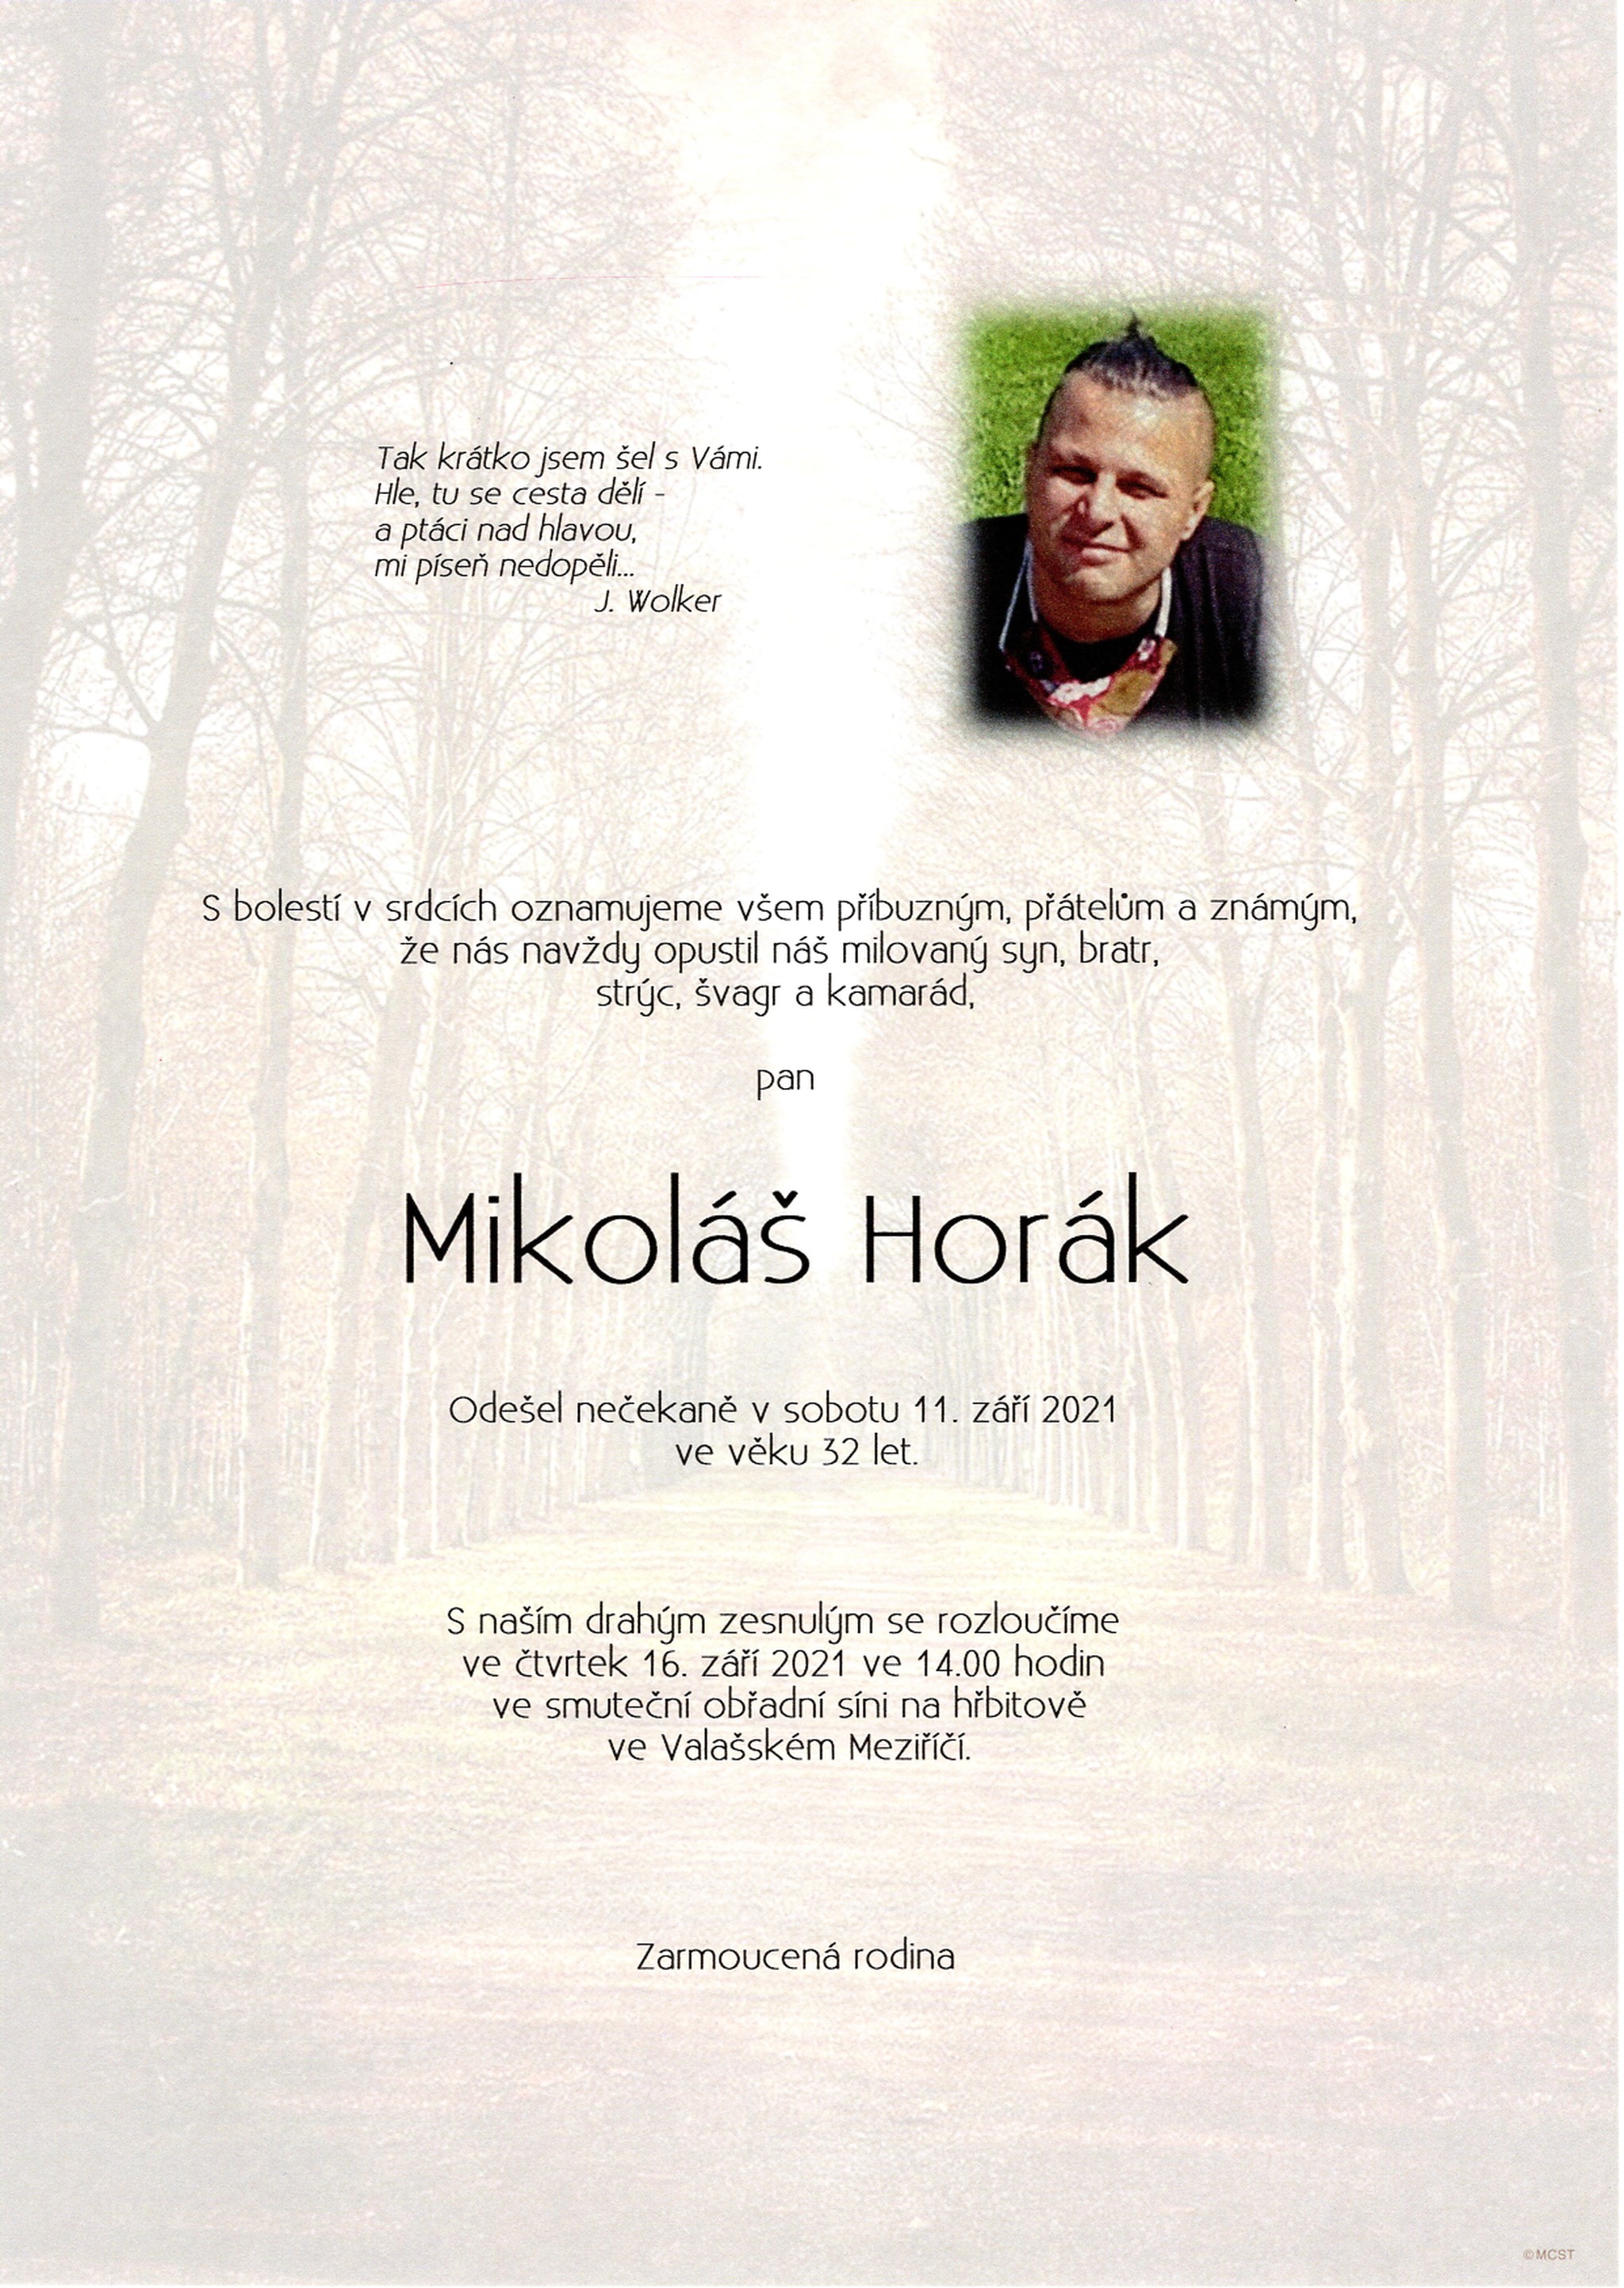 Mikoláš Horák